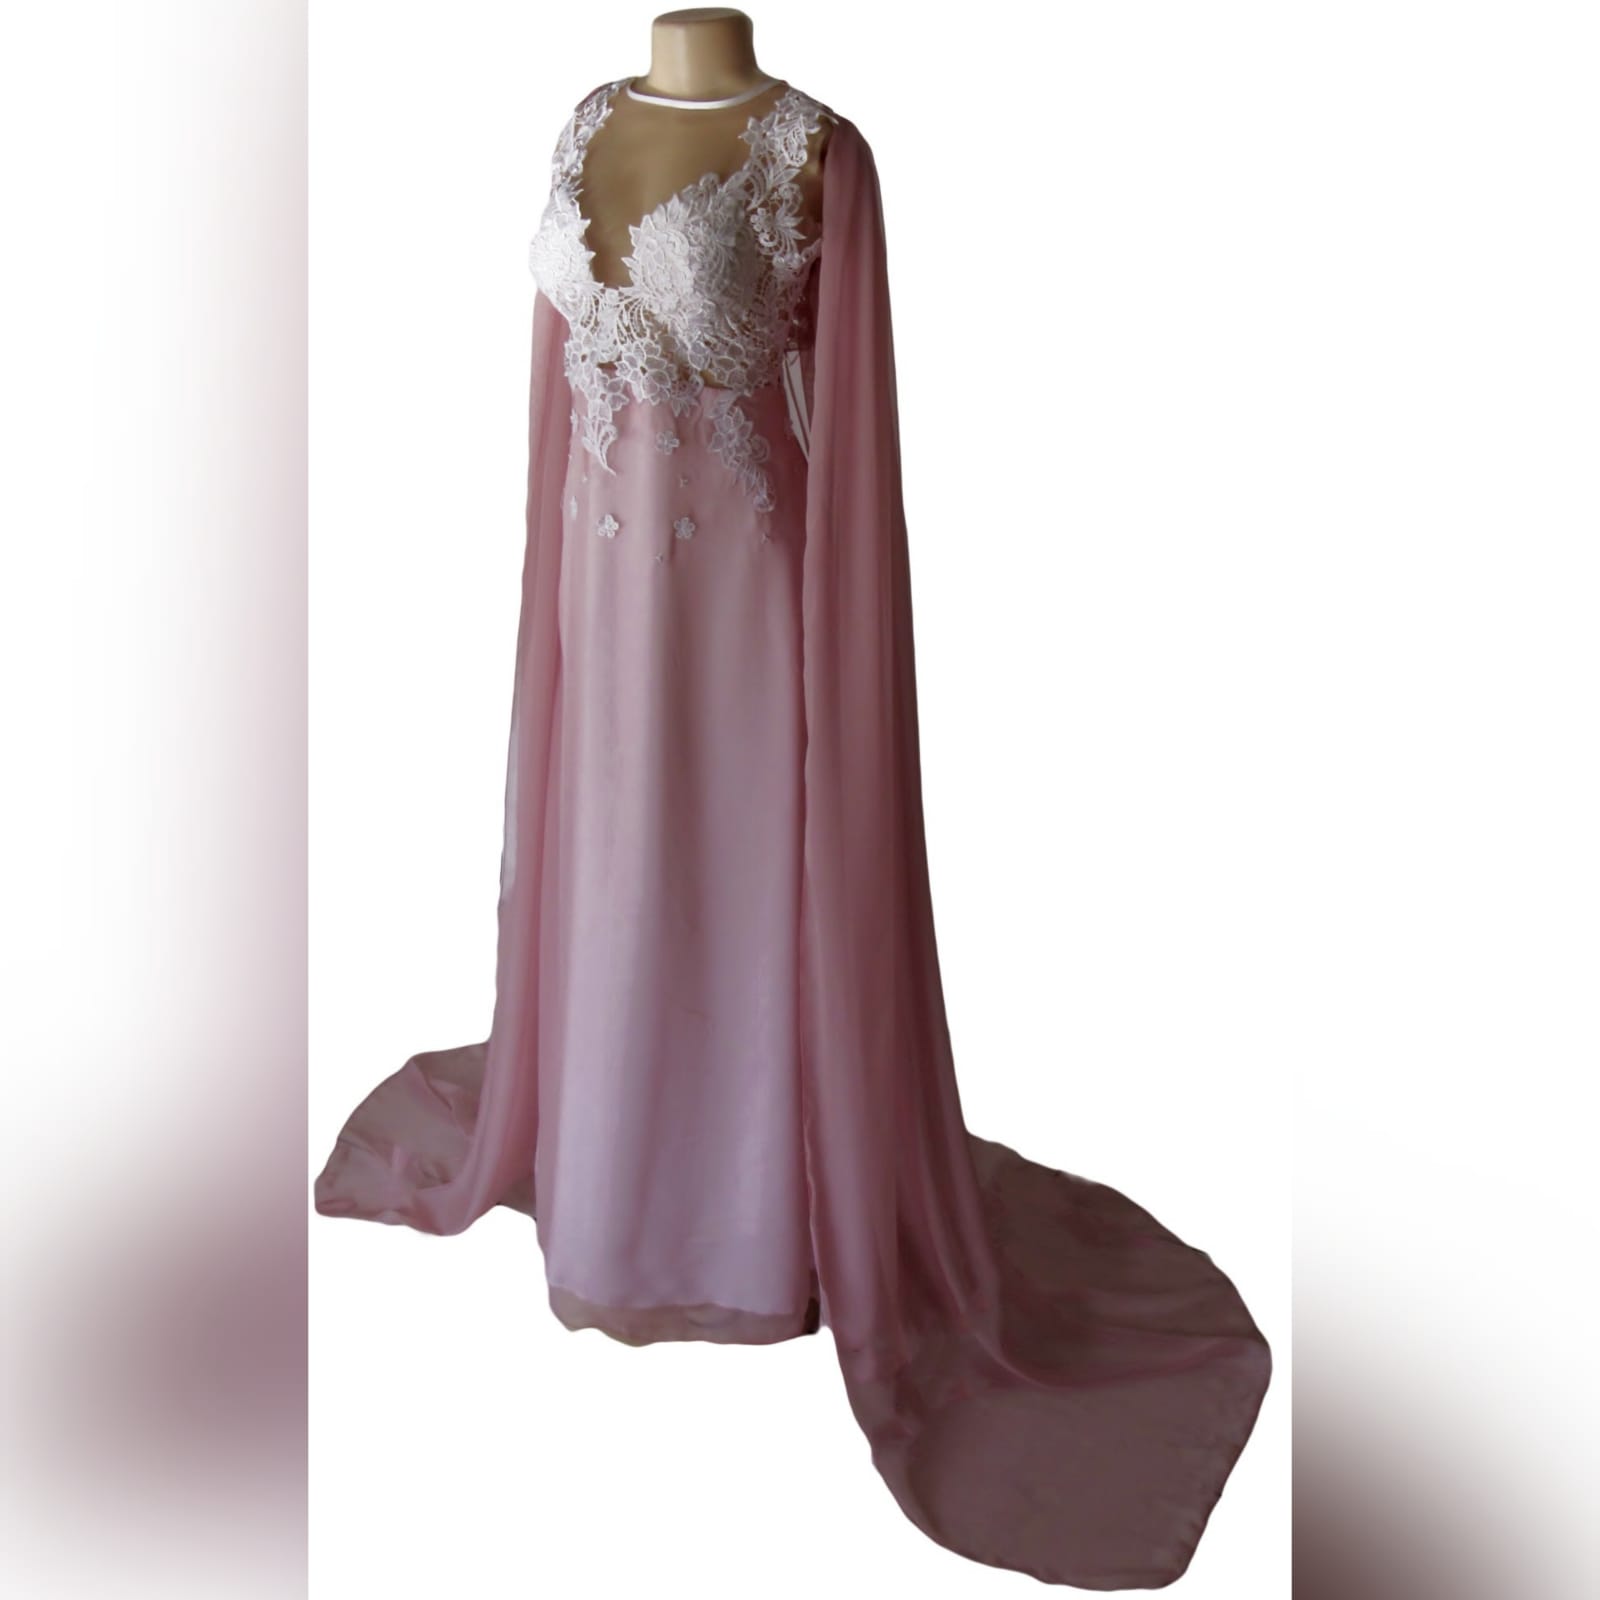 Pink and white lace bodice, long chiffon prom dress 5 pink and white lace bodice, long chiffon prom dress. With a v back and a long chiffon cape.